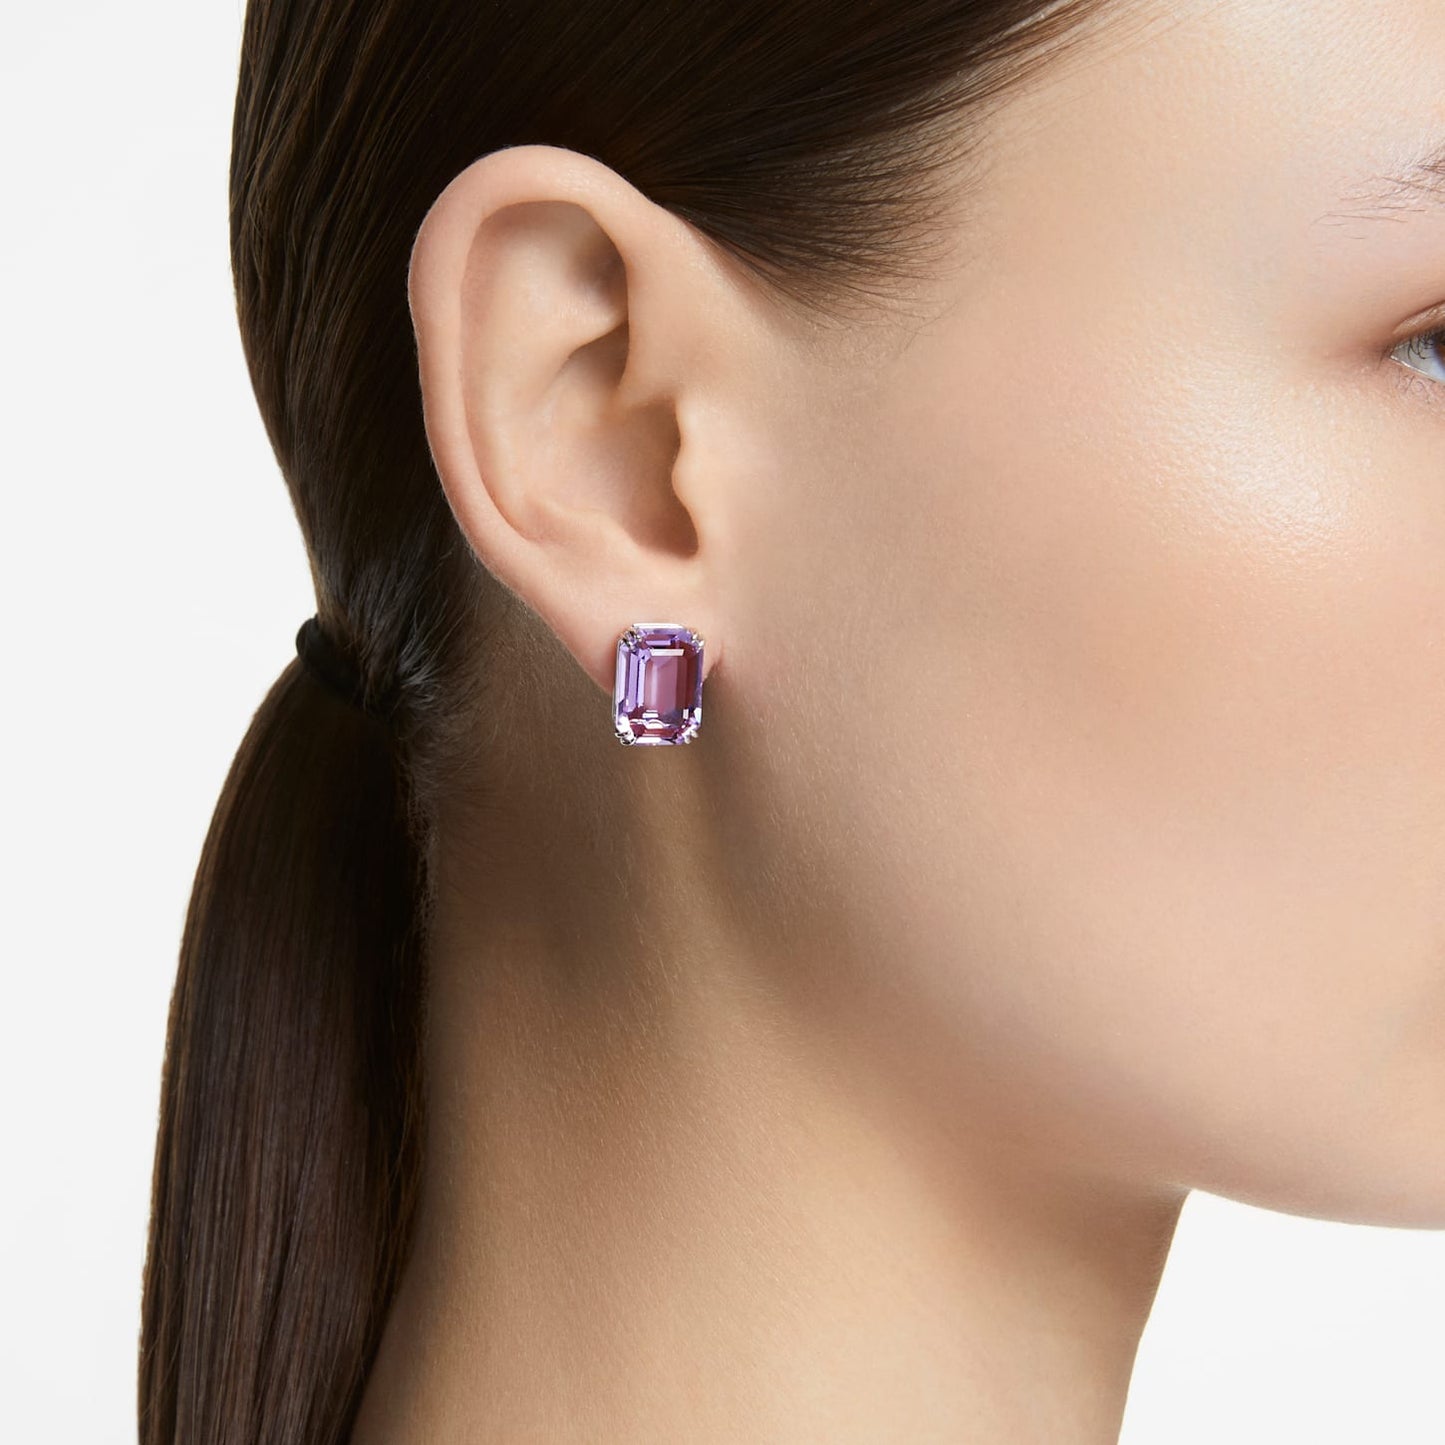 Millenia - Octagonal - Purple Silver - Stud earrings - Swarovski